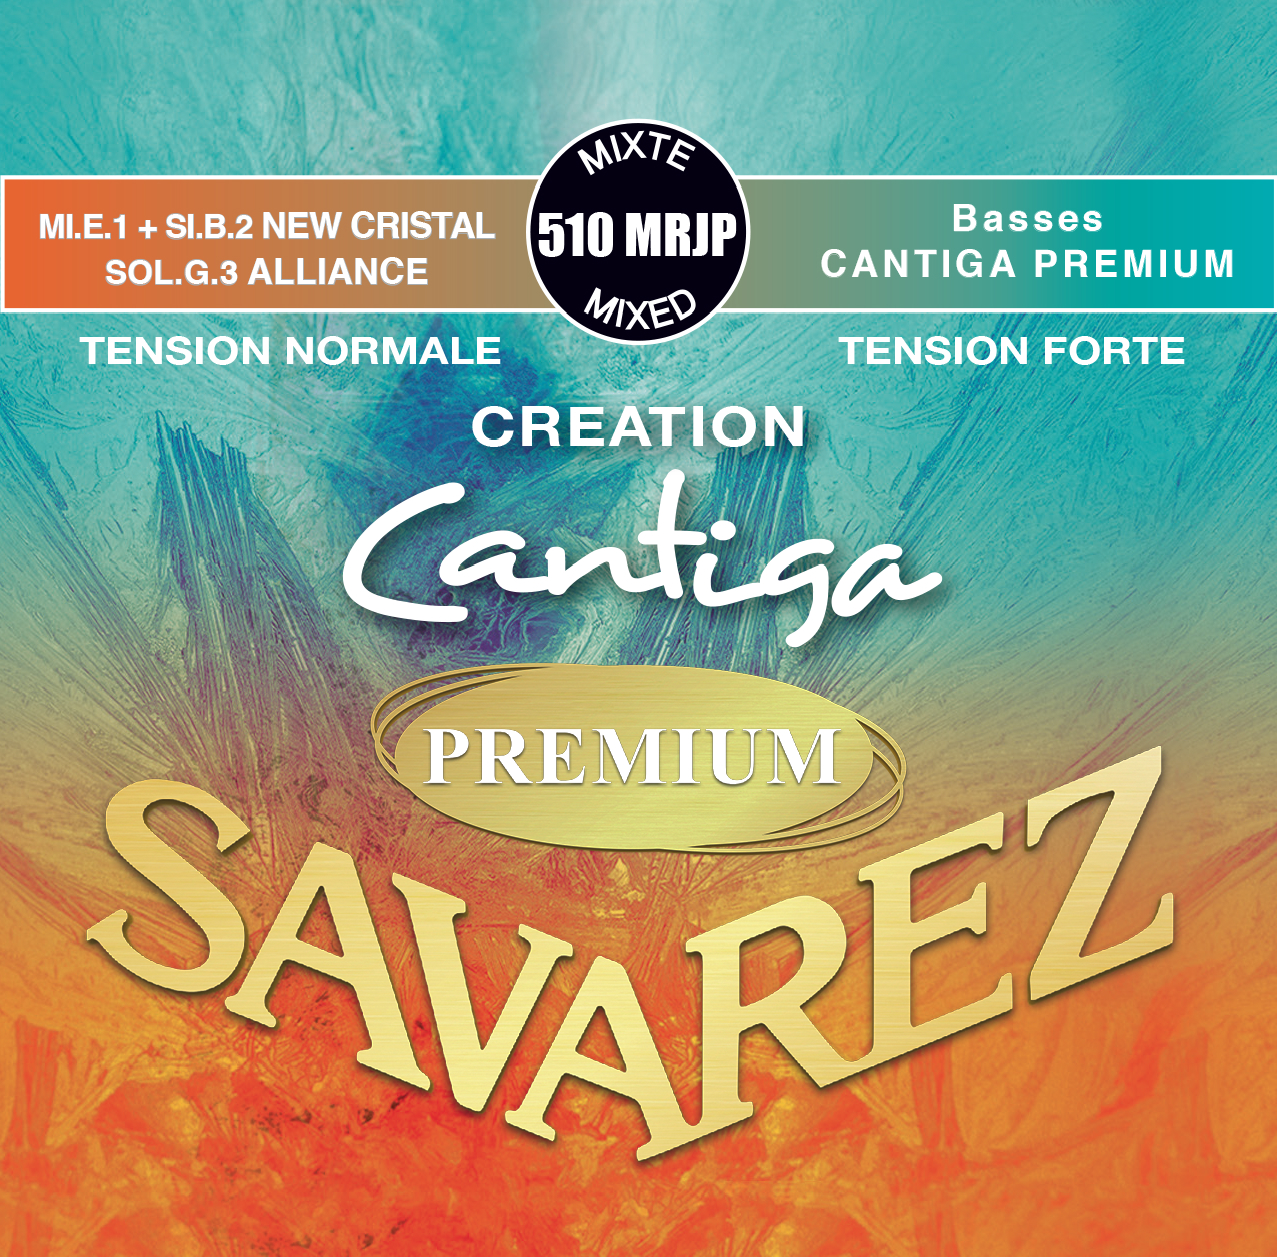 CREATION CANTIGA PREMIUM NORMAL TENSION 510MRP | Savarez